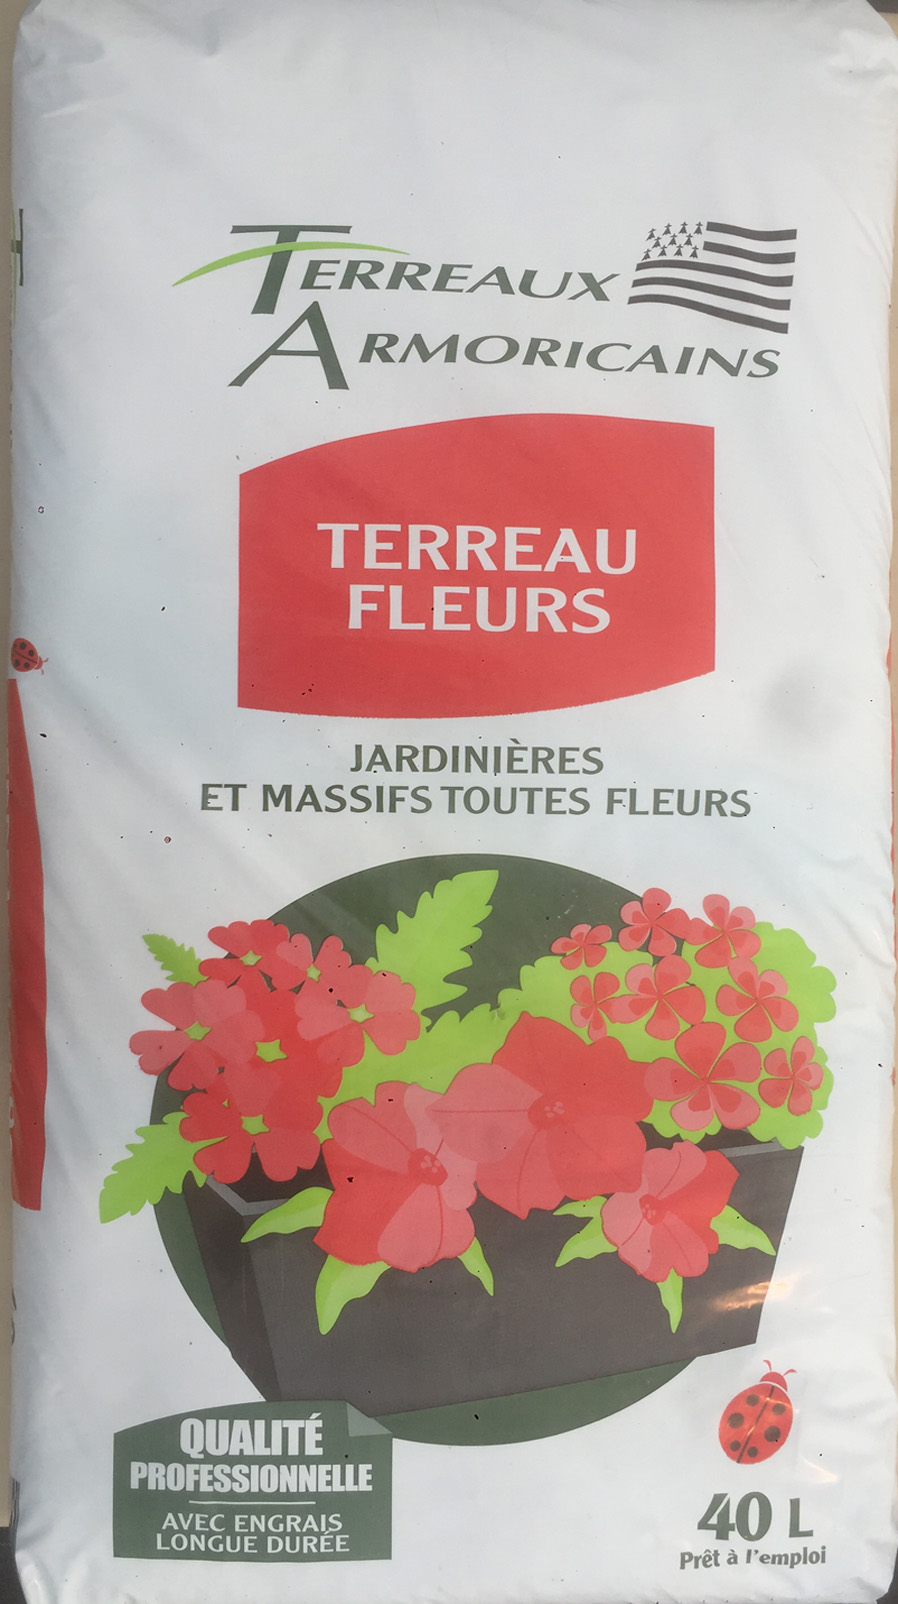 Terreau fleurs 40 litres -Terreaux Armoricains